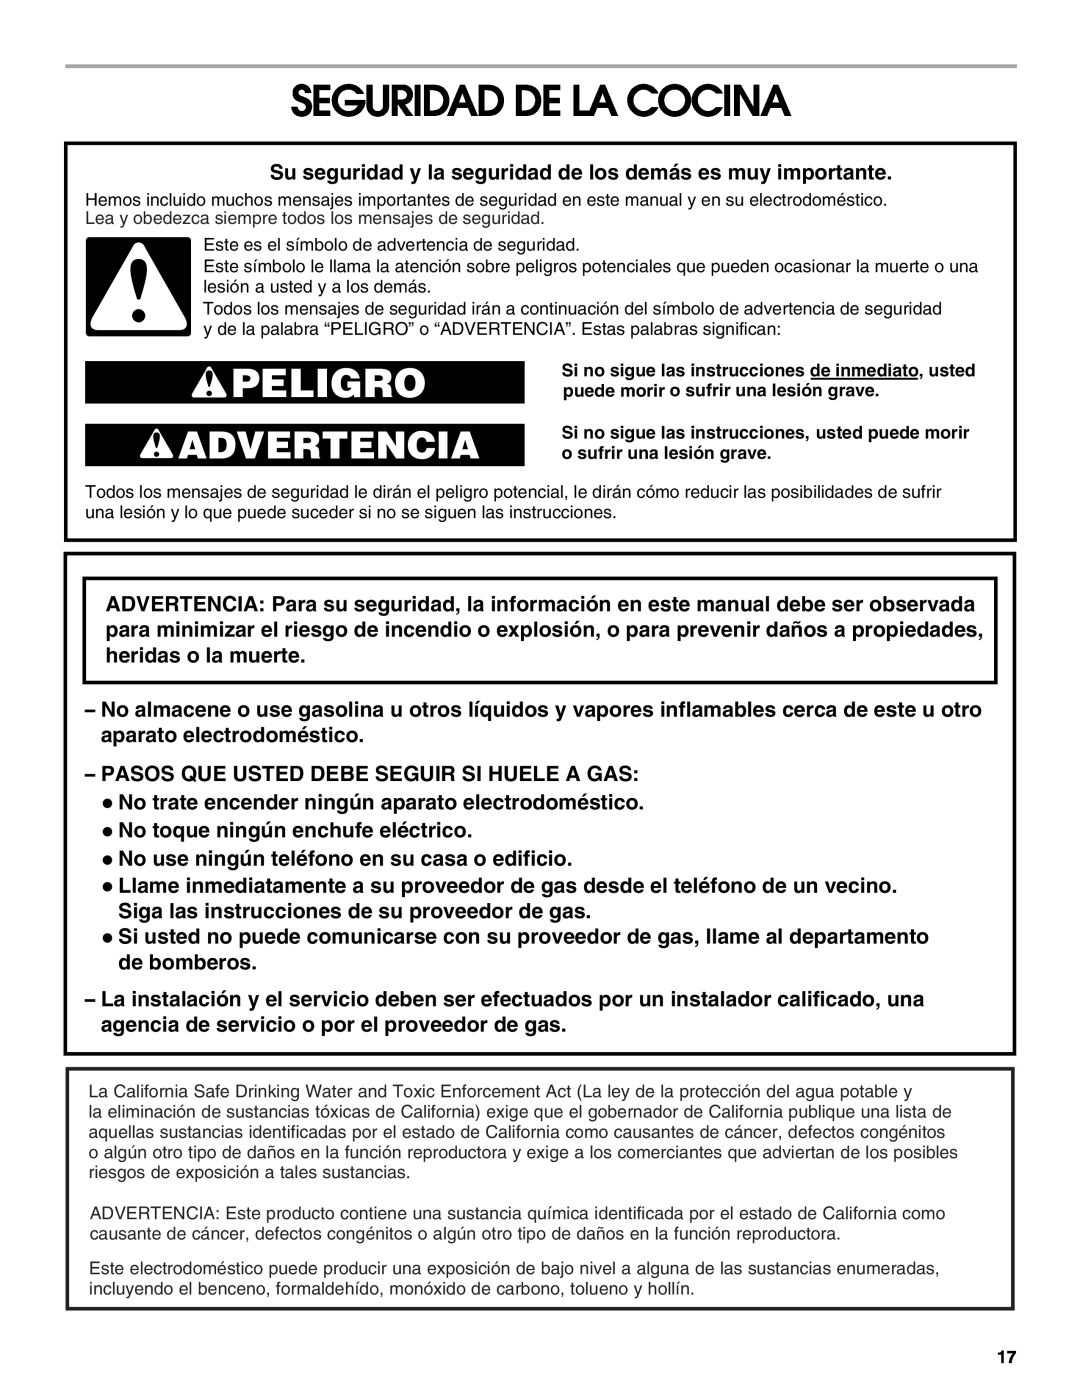 Whirlpool 98012565 manual Seguridad De La Cocina, Peligro, Advertencia 